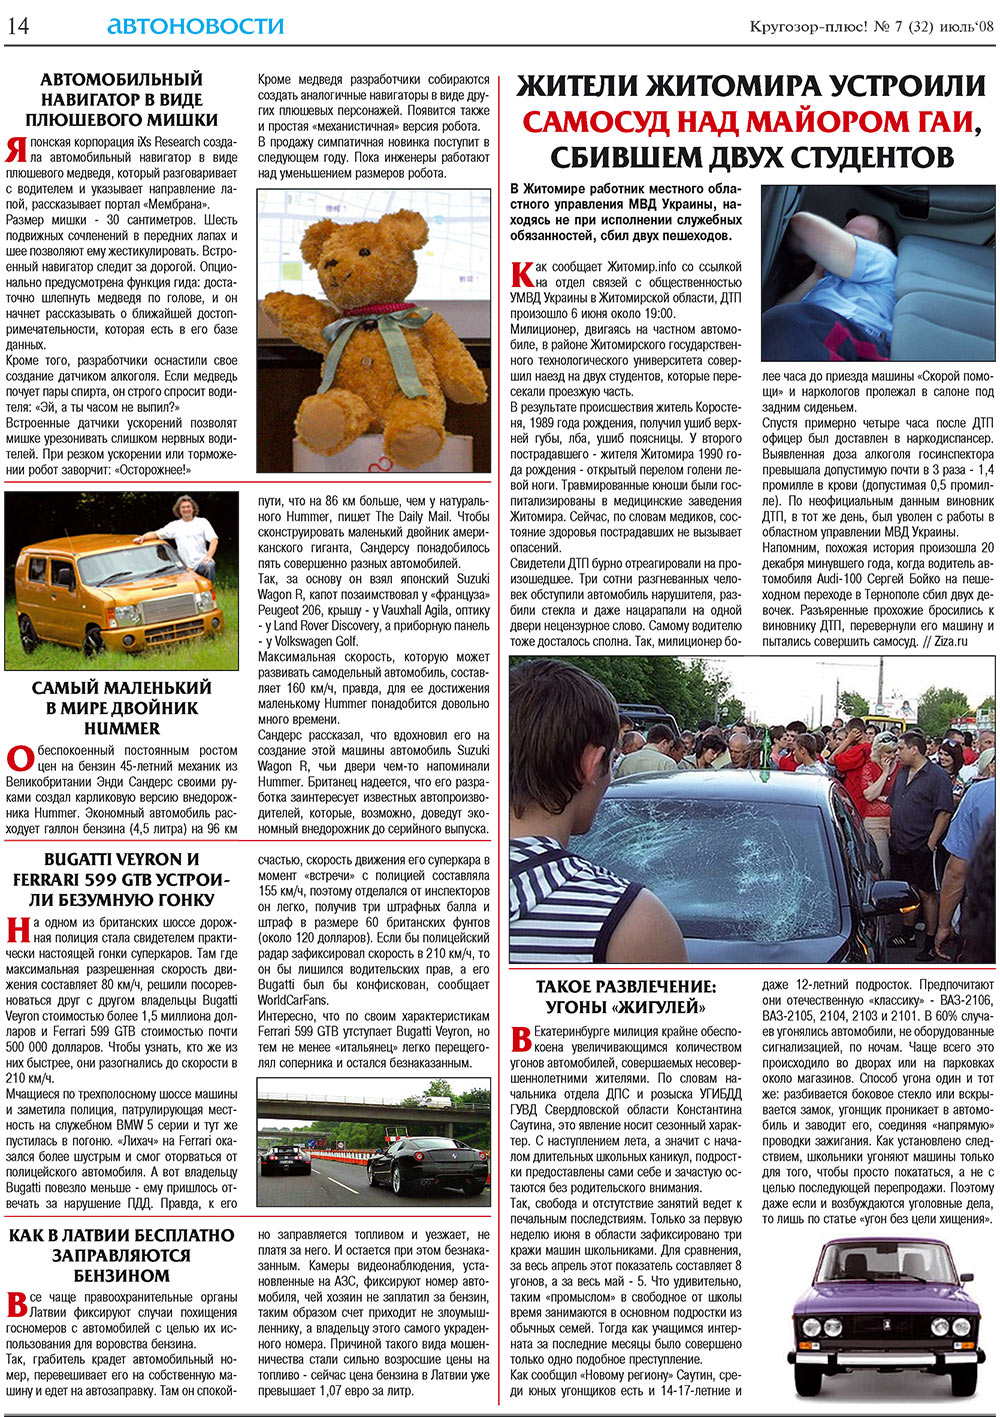 Кругозор плюс!, газета. 2008 №7 стр.14